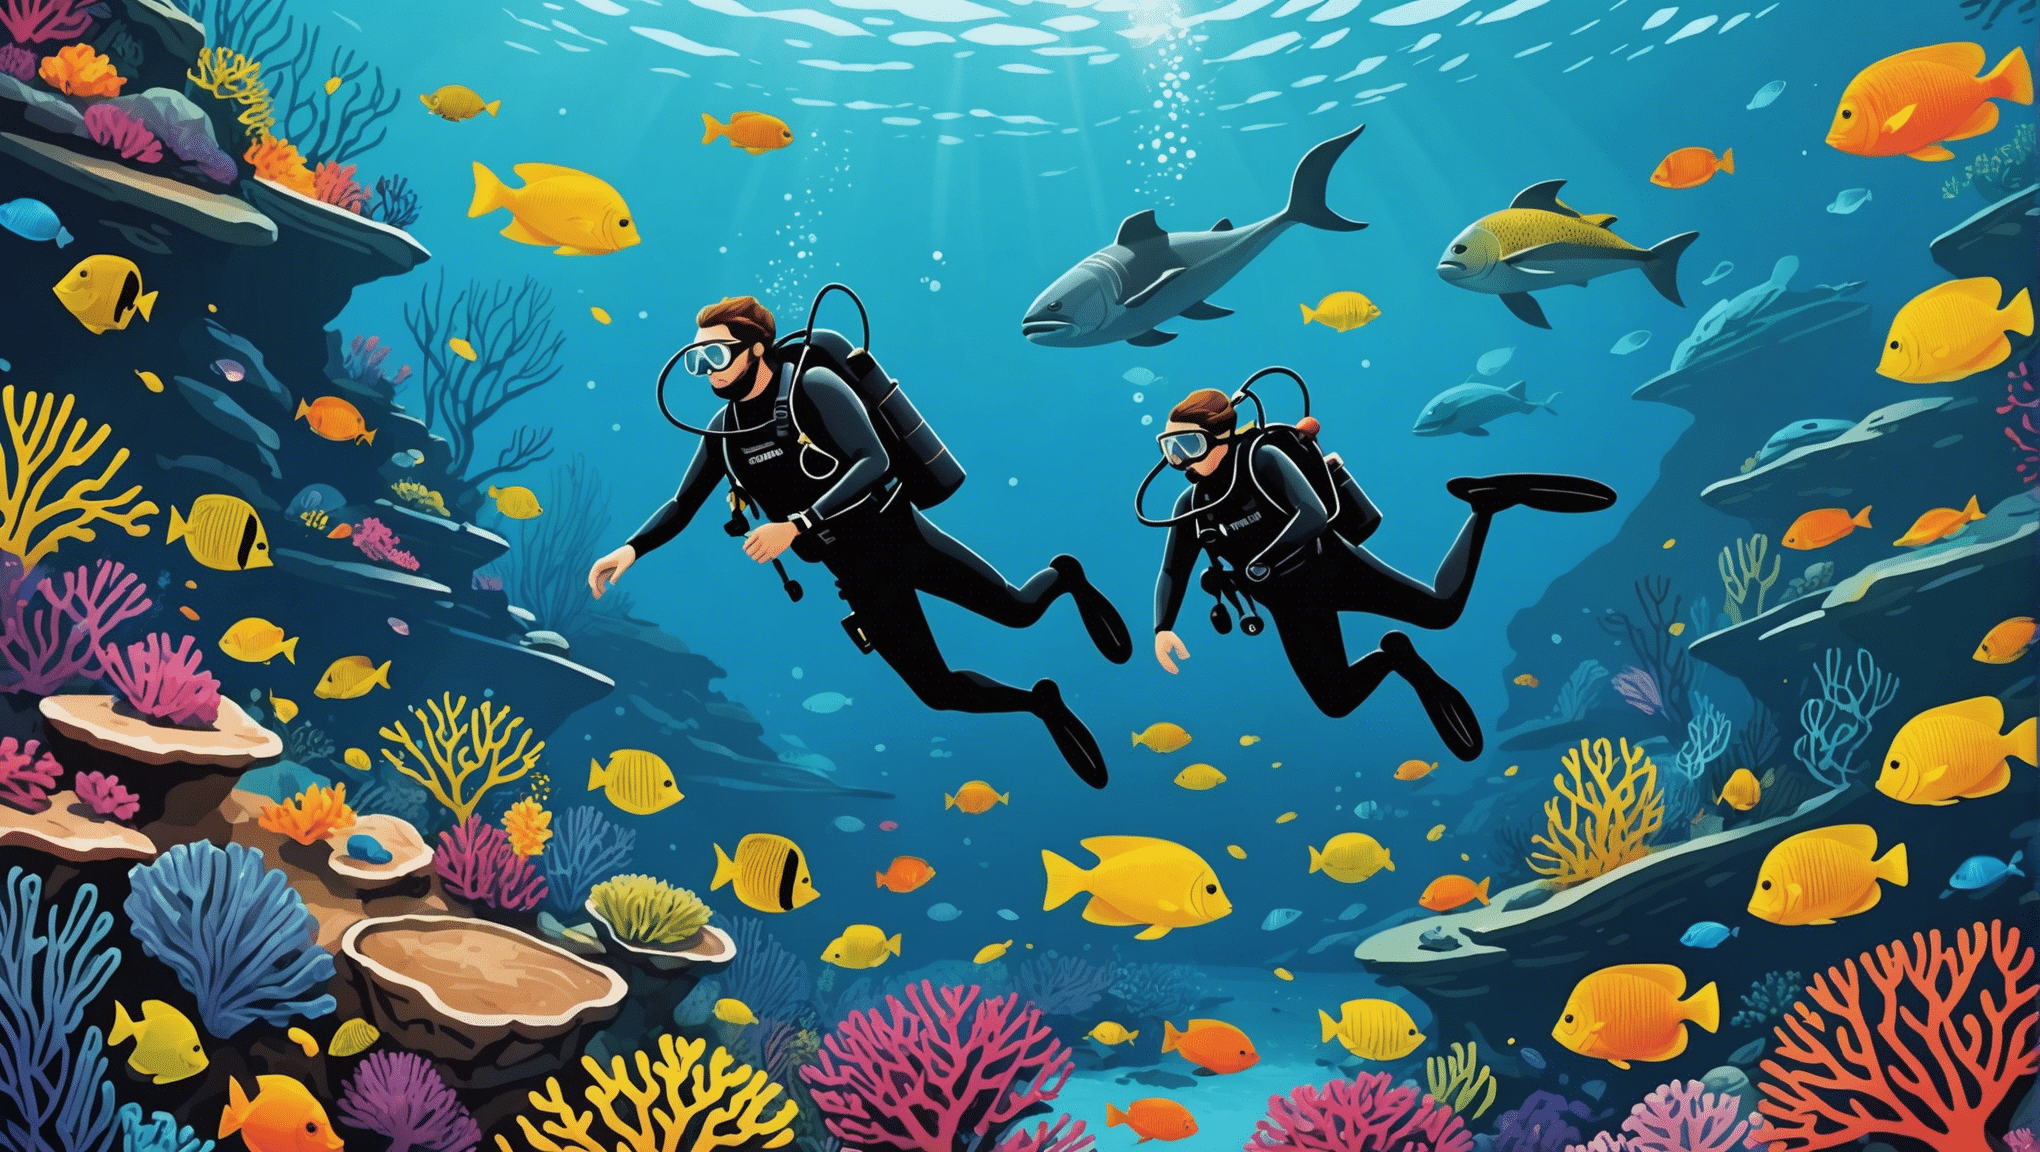 اكتشف أفضل مواقع الغوص في العالم واكتشف الجمال تحت الماء من خلال وجهاتنا التي لا يمكن تفويتها.